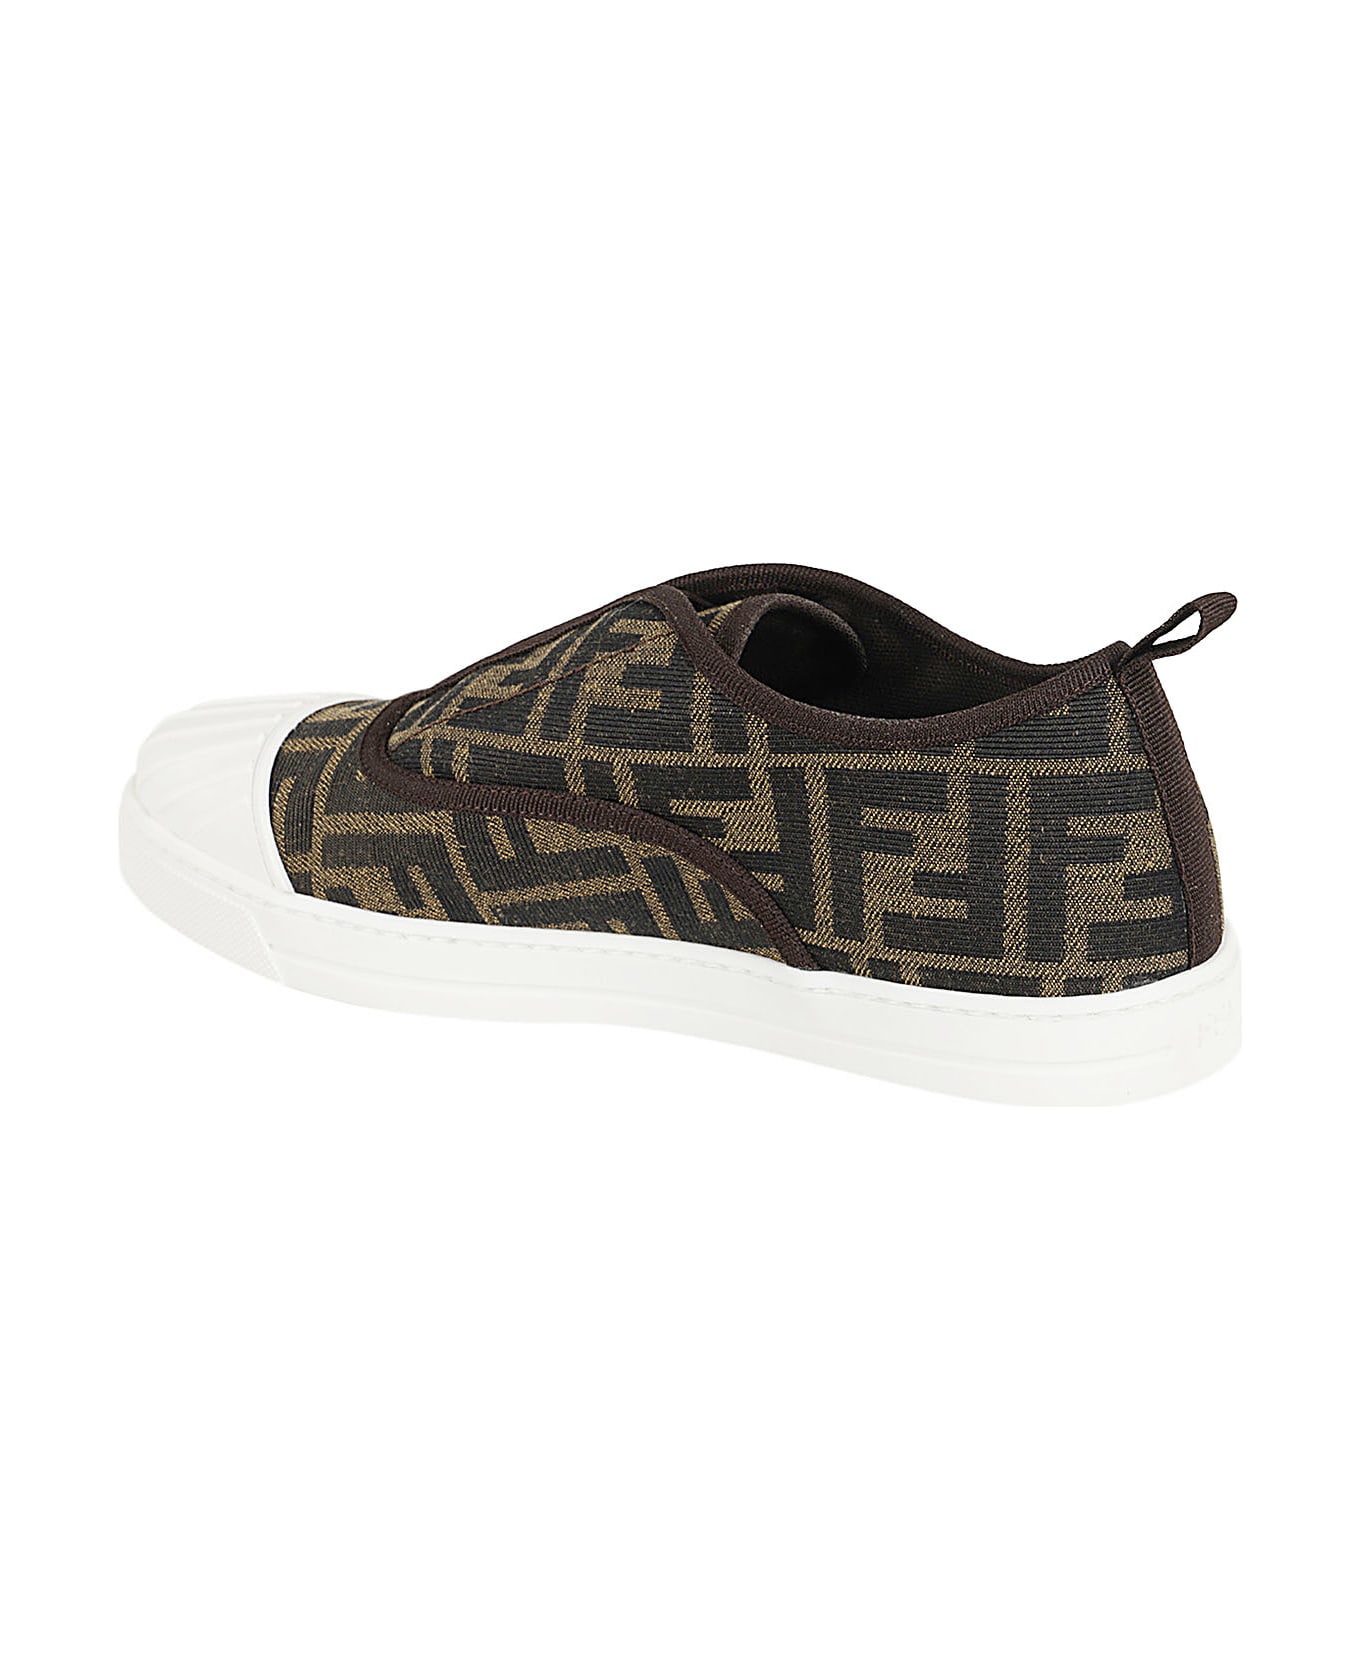 Fendi Sneaker - Vans Style 36 Mens Skate BMX Shoes Port Royale True White